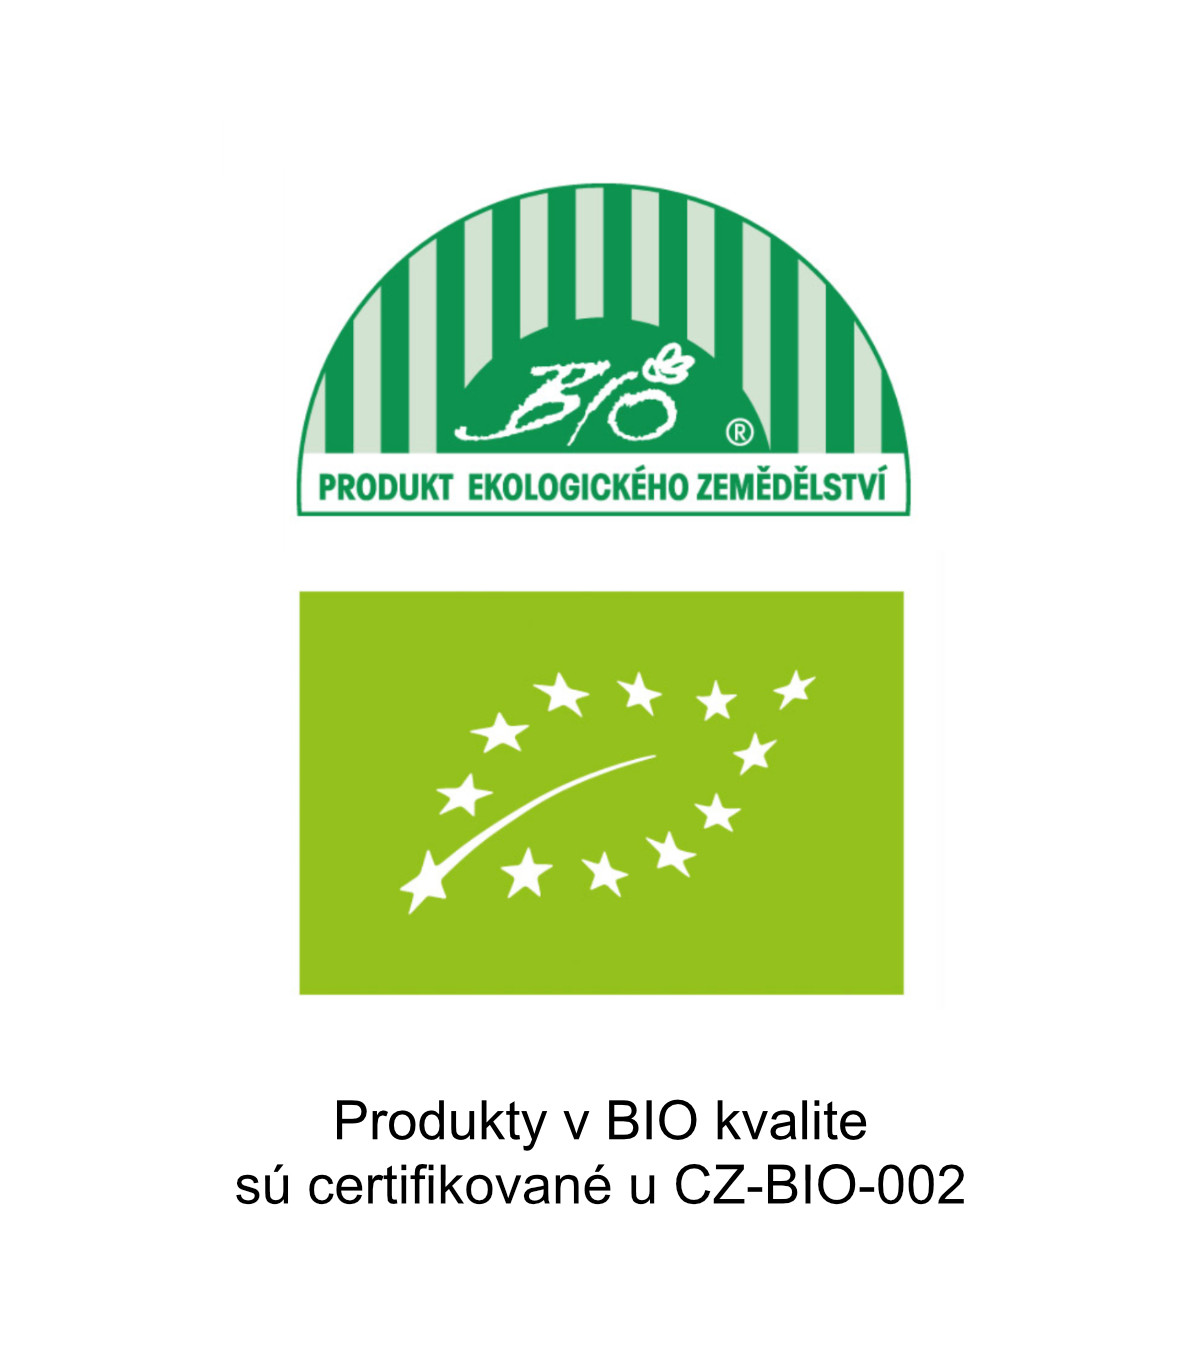 Produkty v BIO kvalite sú certifikované u CZ-BIO 002